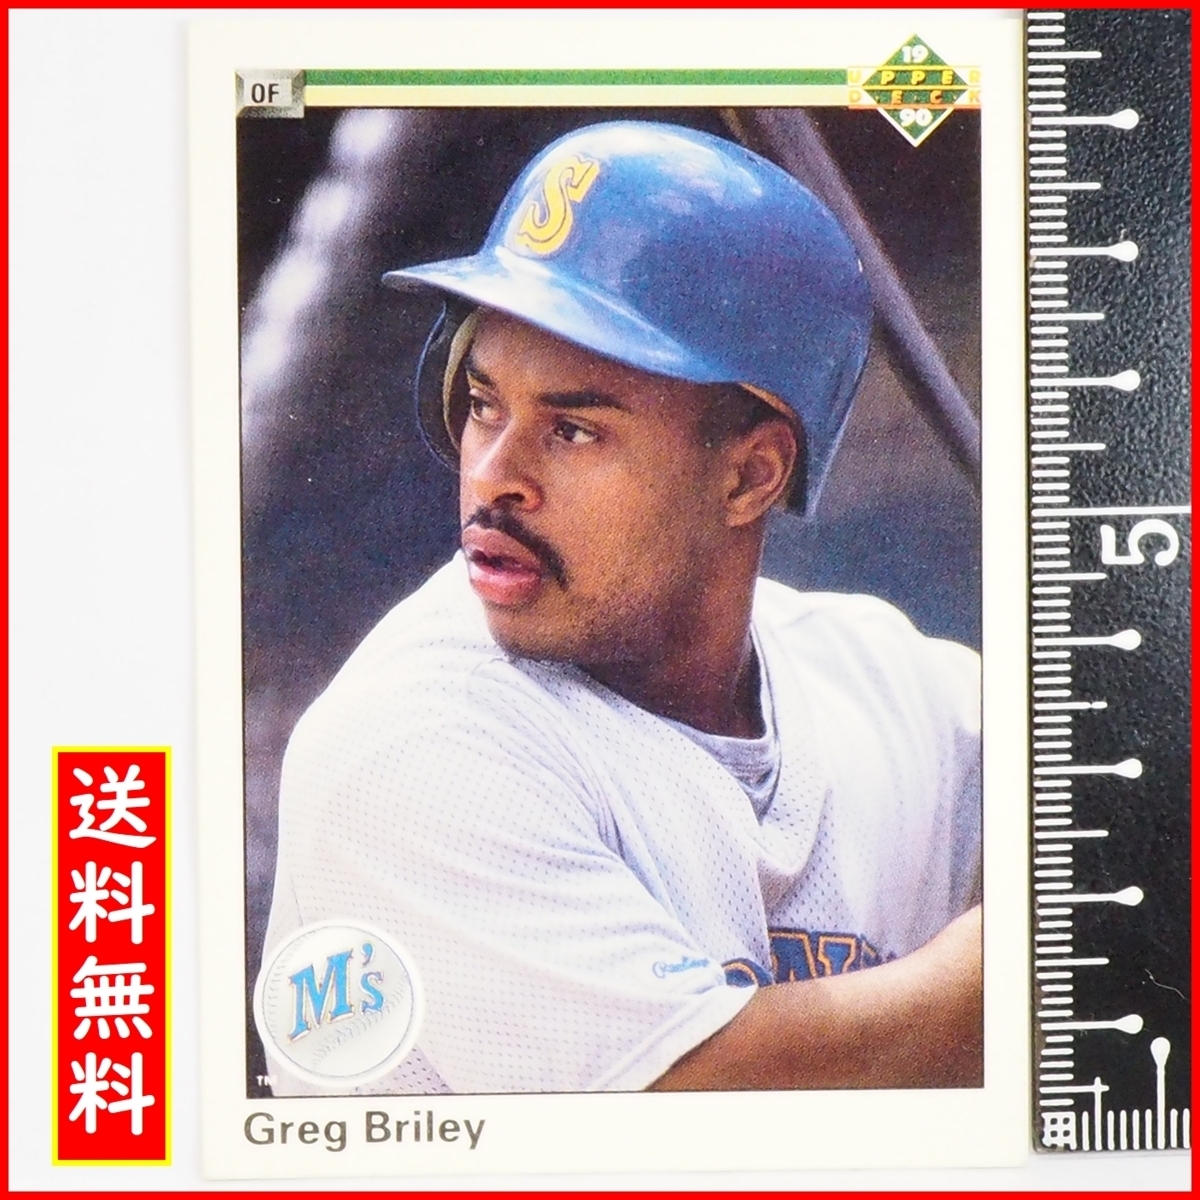 Upper Deck 90 #455 [Грег Брайли (Маринерс)] 1990 MLB Главная лига бейсбола Бейсбольная карточка CARD Верхняя палуба бейсбола [доставка включена]